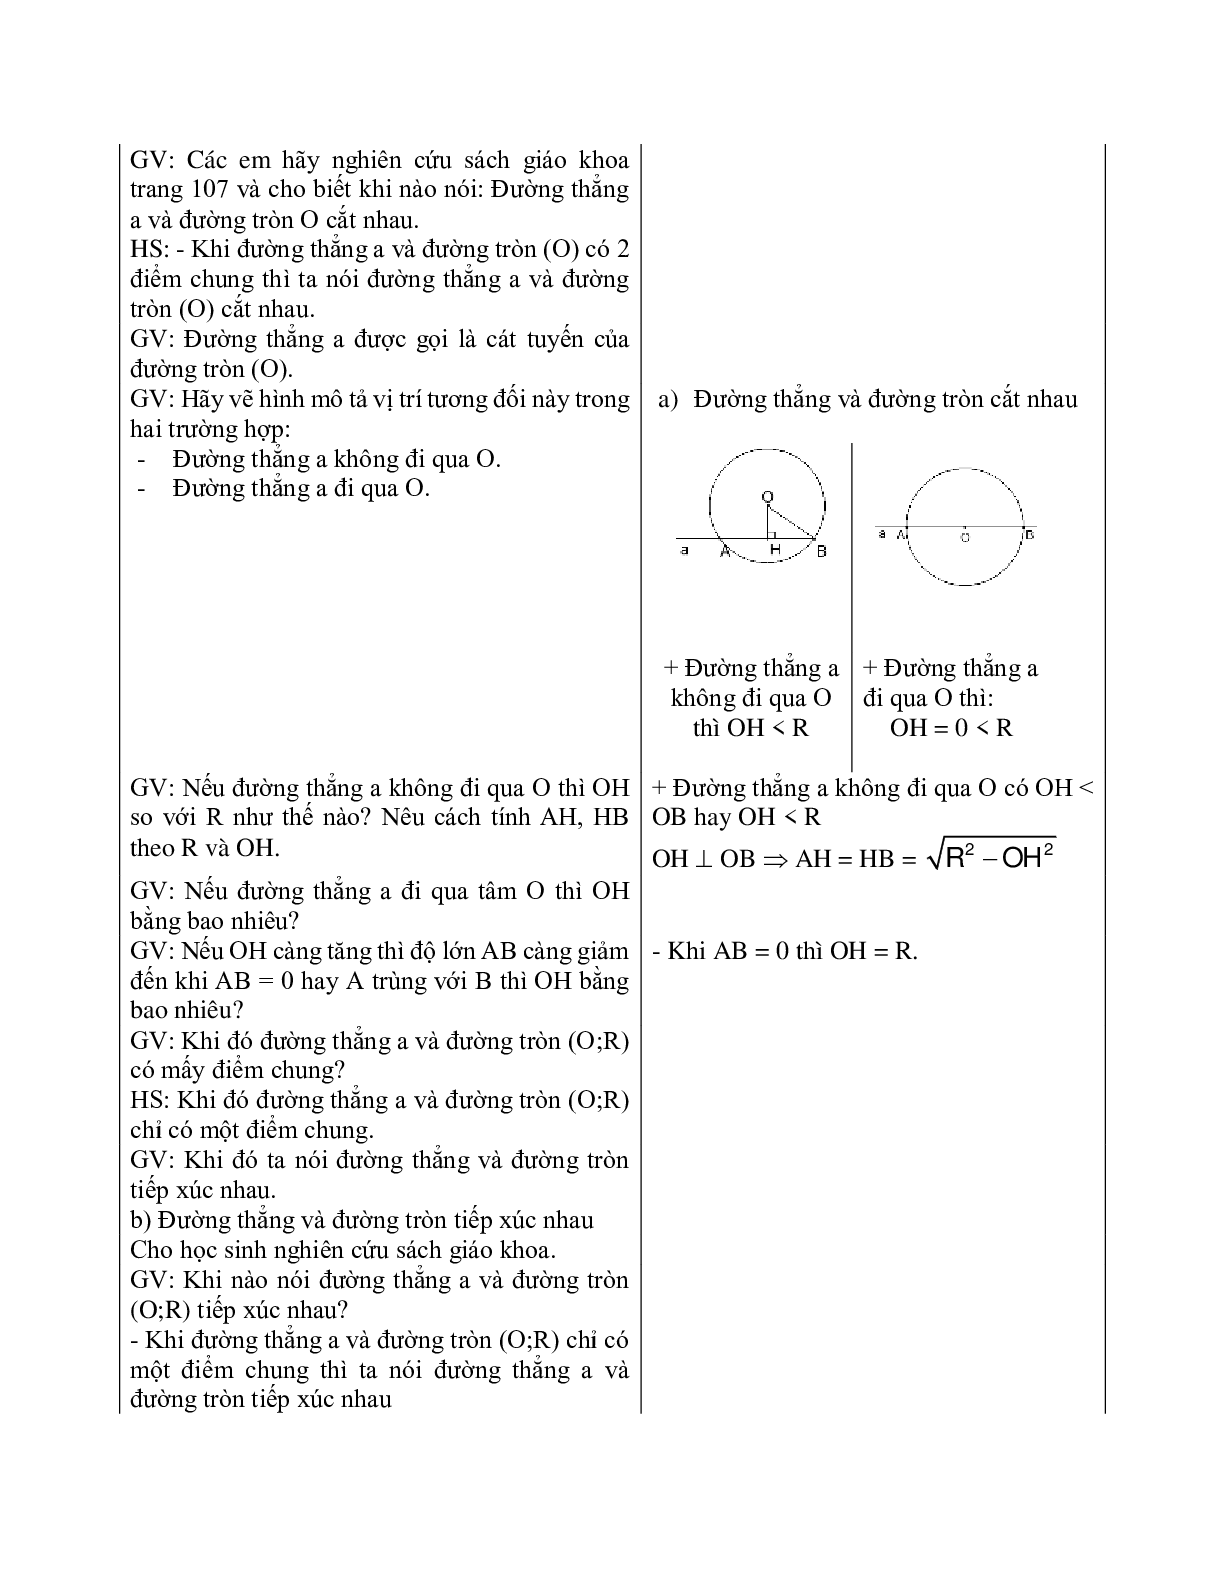 Giáo án Hình học 9 chương 2 bài 4: Vị trí tương đối của đường thẳng và đường tròn mới nhất (trang 5)